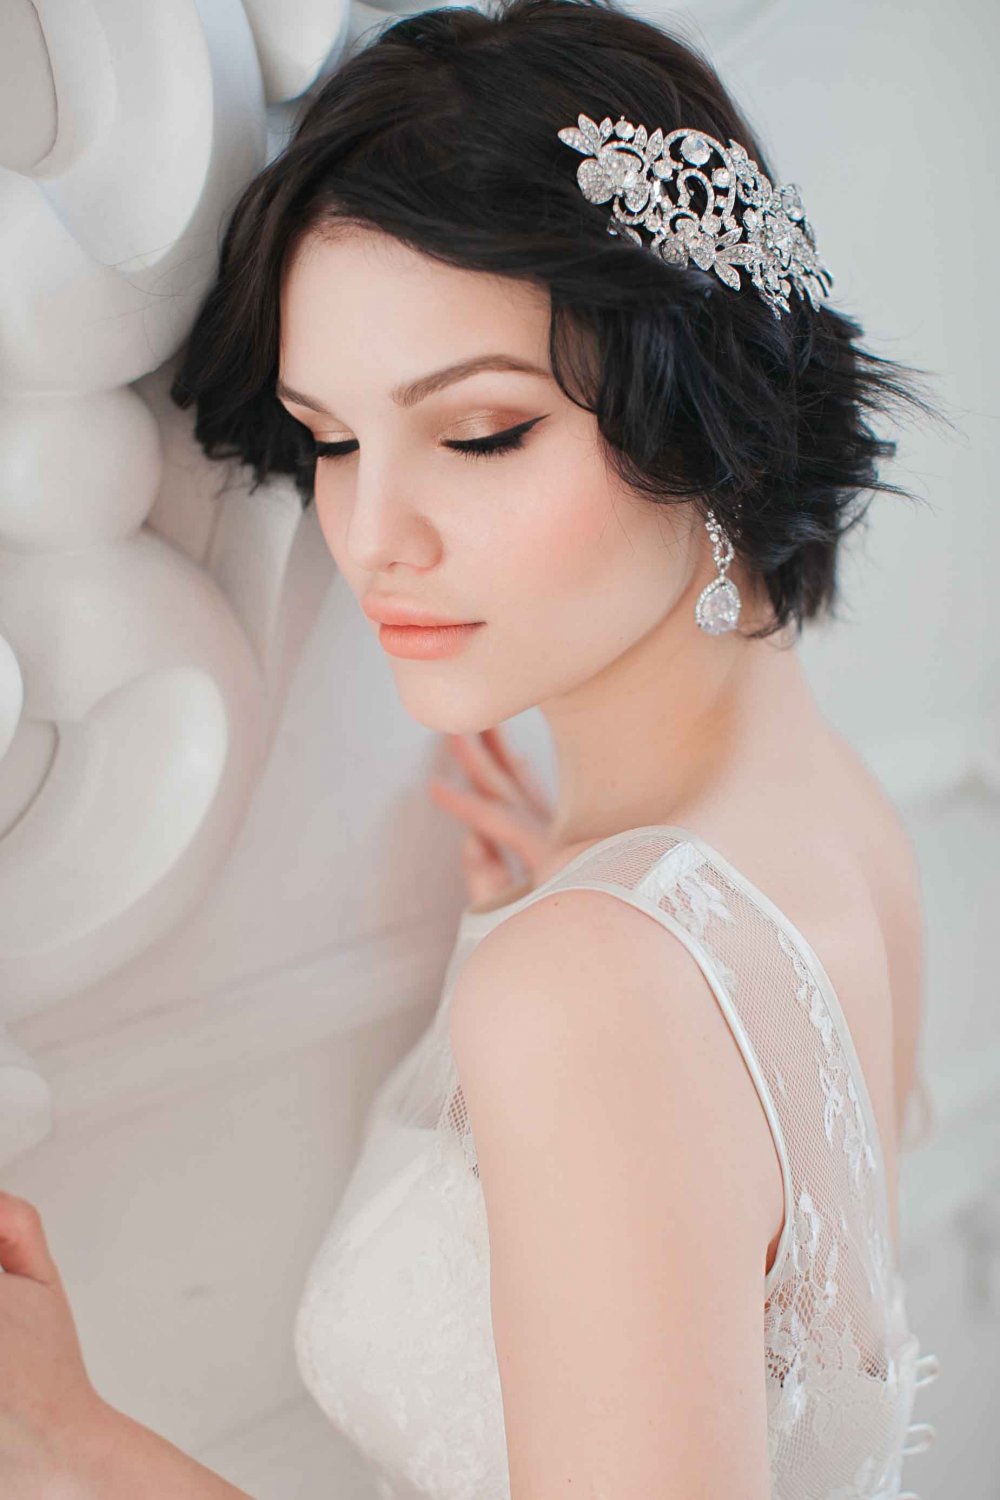 Образ невесты. Прическа на короткие волосы с объемным украшением